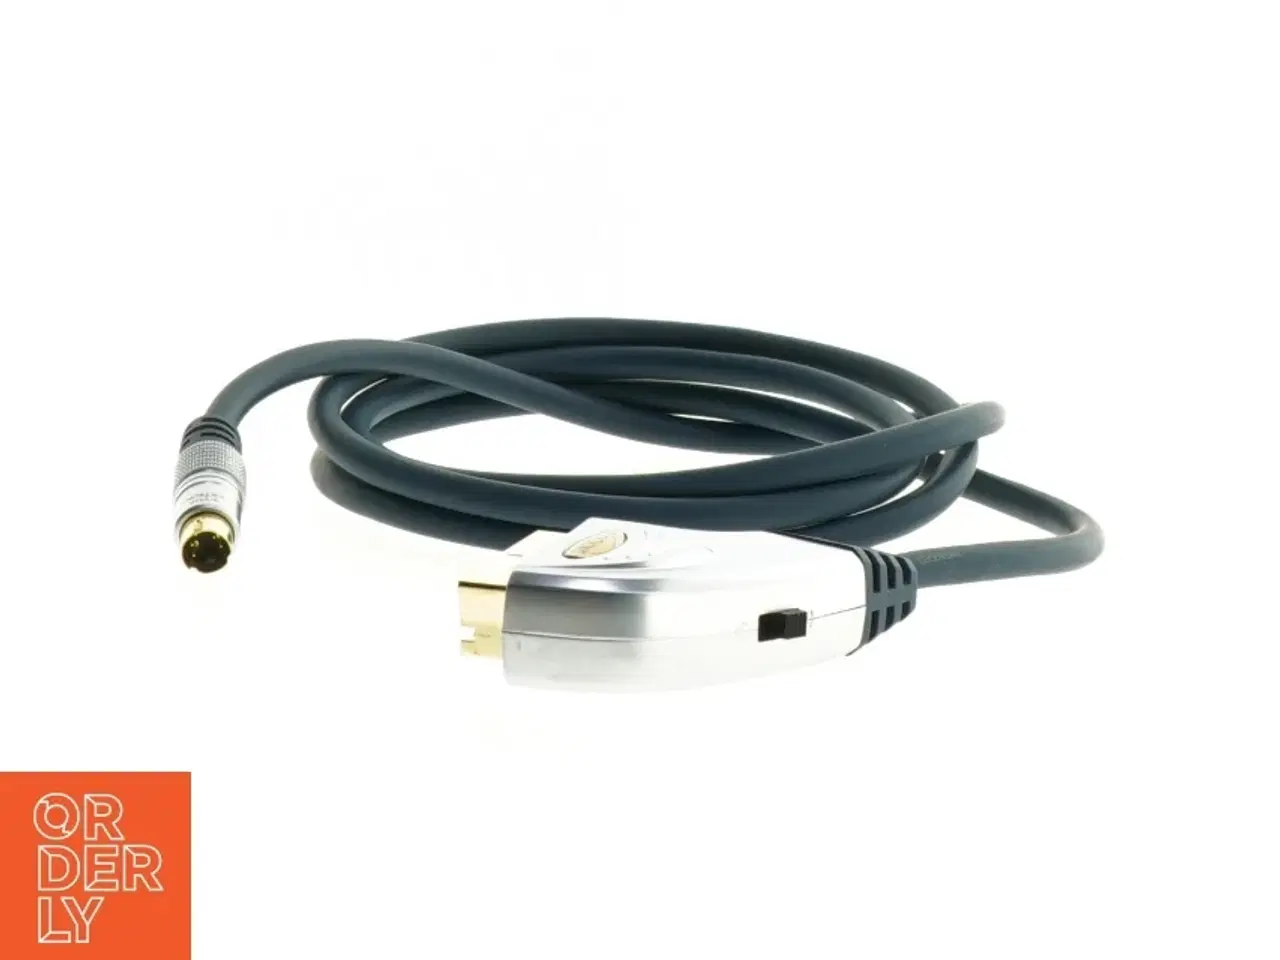 Billede 3 - Clicktronic Scart-kabel med S-video stik fra Clicktronic (str. 155 cm)